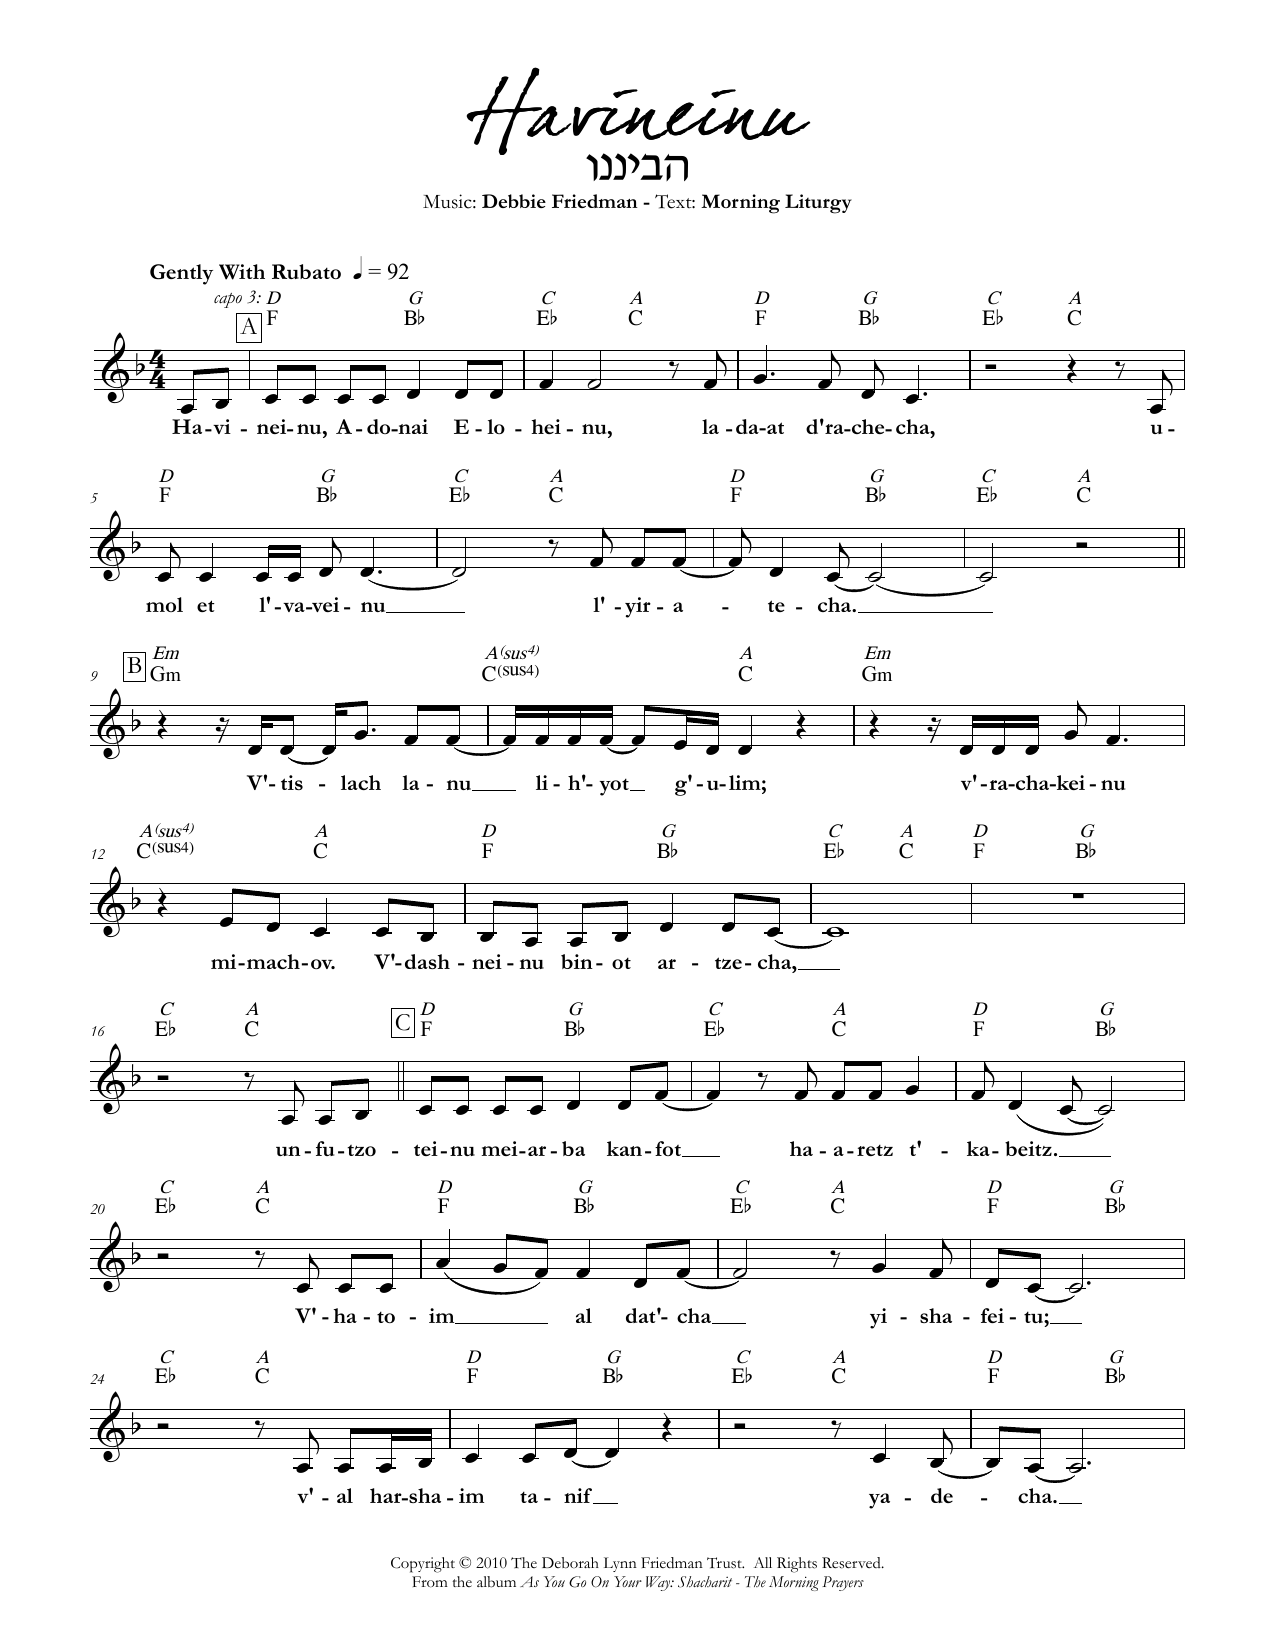 Havineinu sheet music